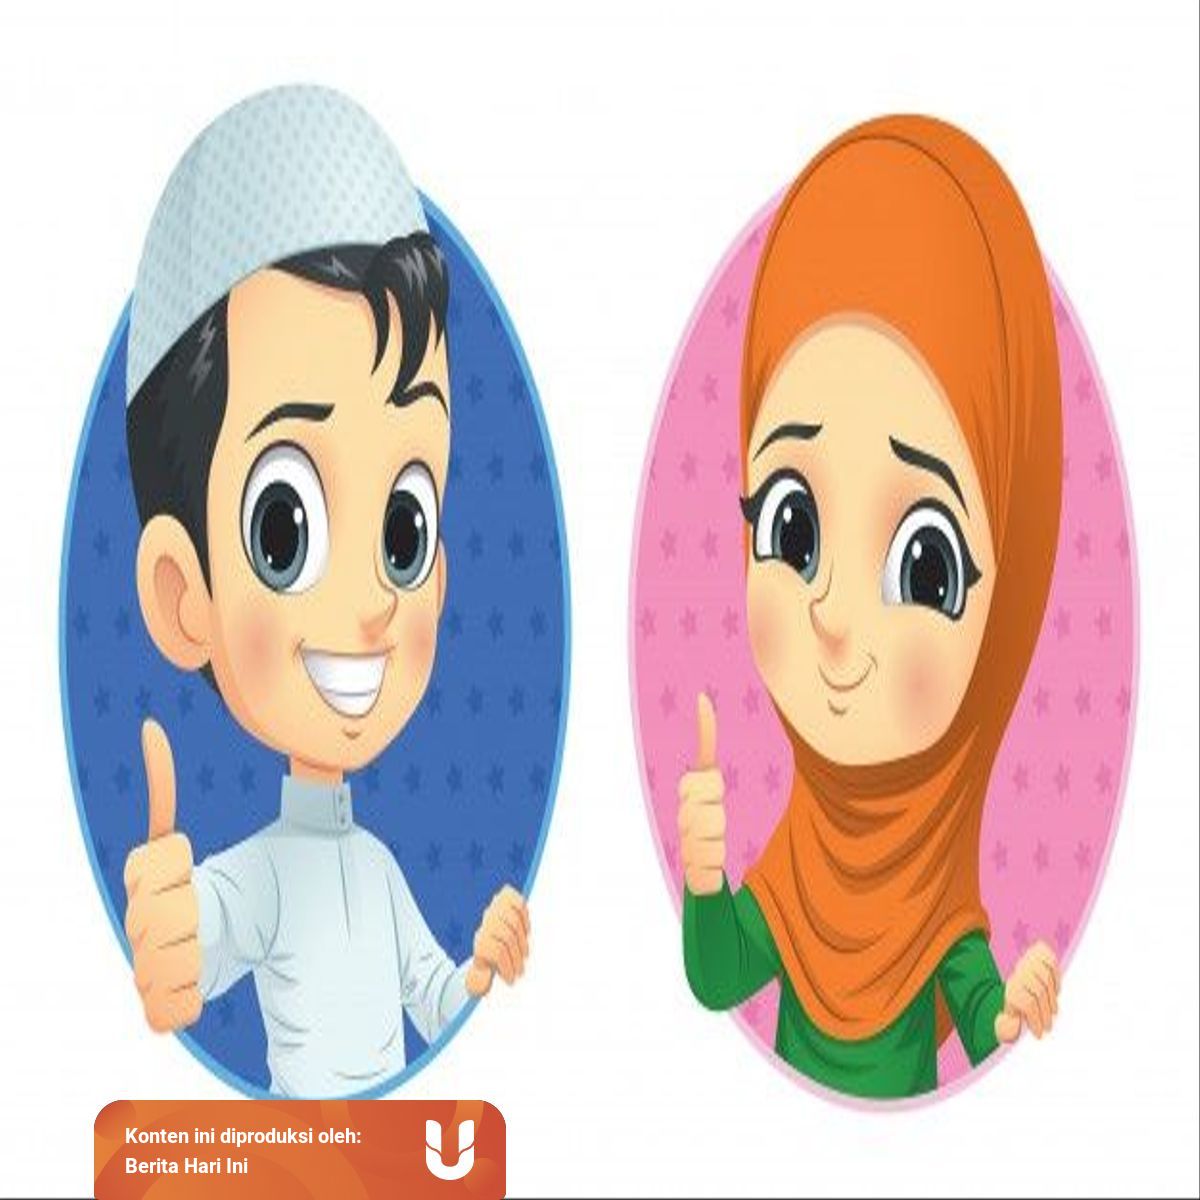 muslim kids show thumb up 119589 101 povkgu